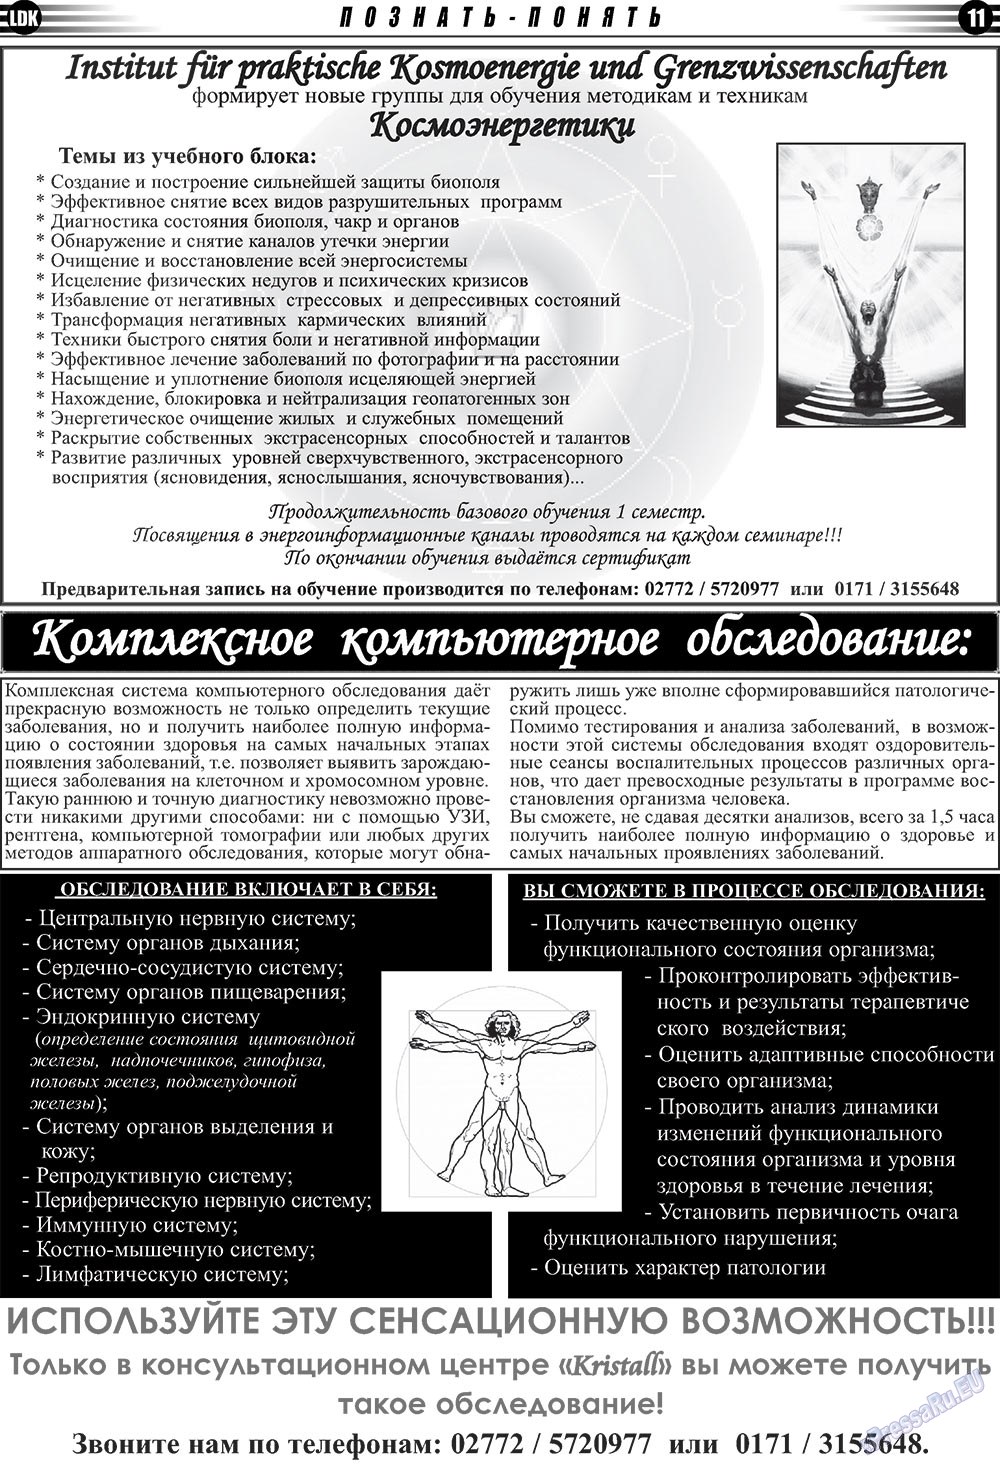 LDK по-русски (газета). 2010 год, номер 3, стр. 11